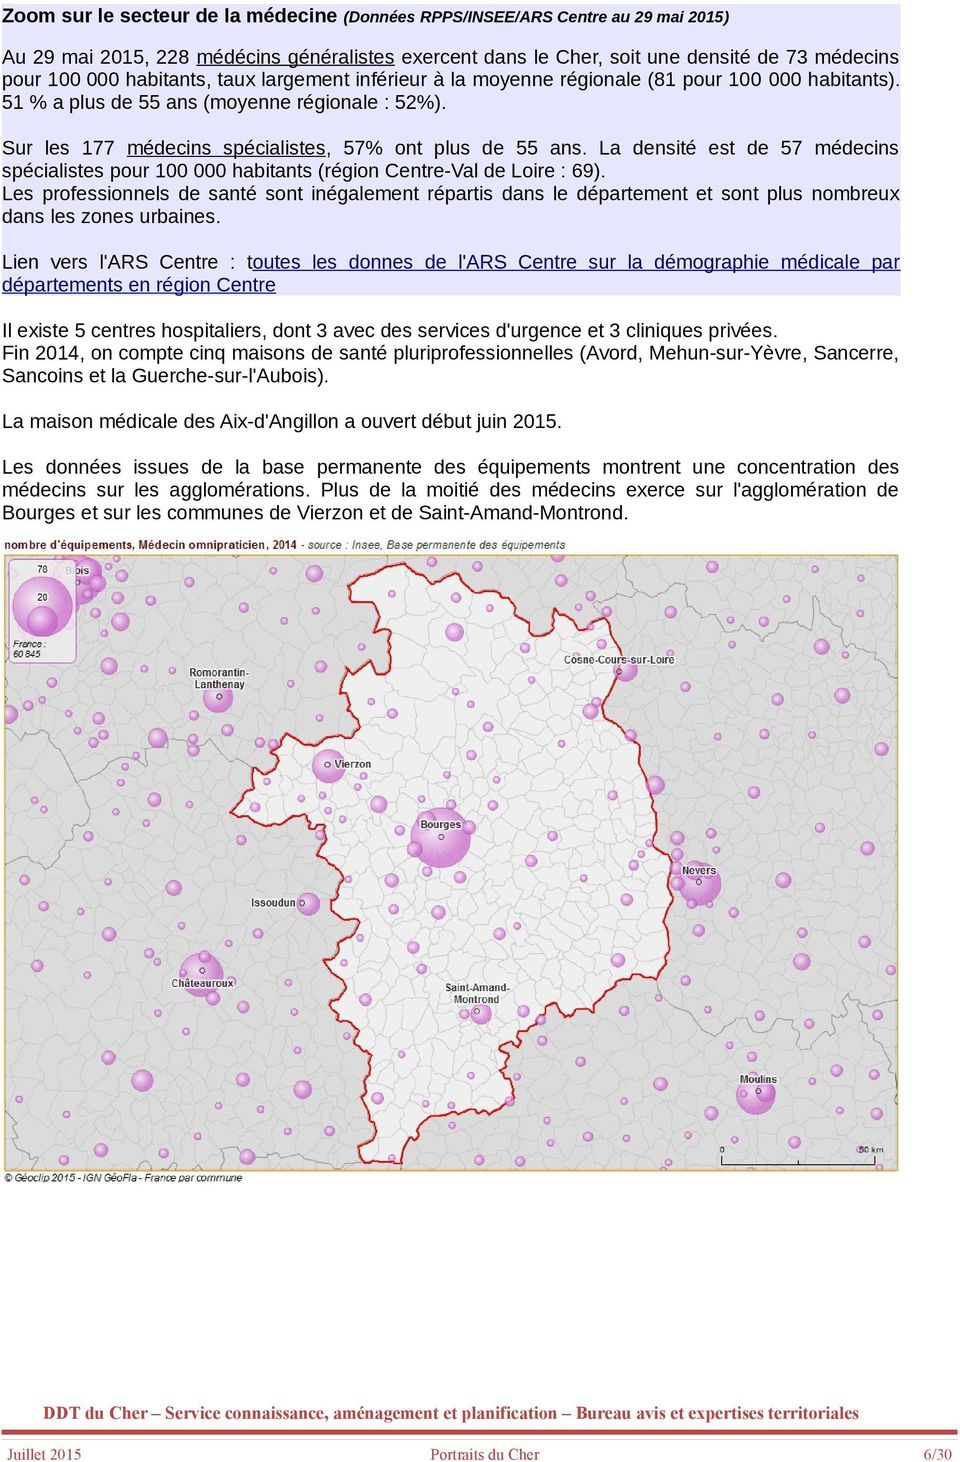 La densité est de 57 médecins spécialistes pour 100 000 habitants (région Centre-Val de Loire : 69).